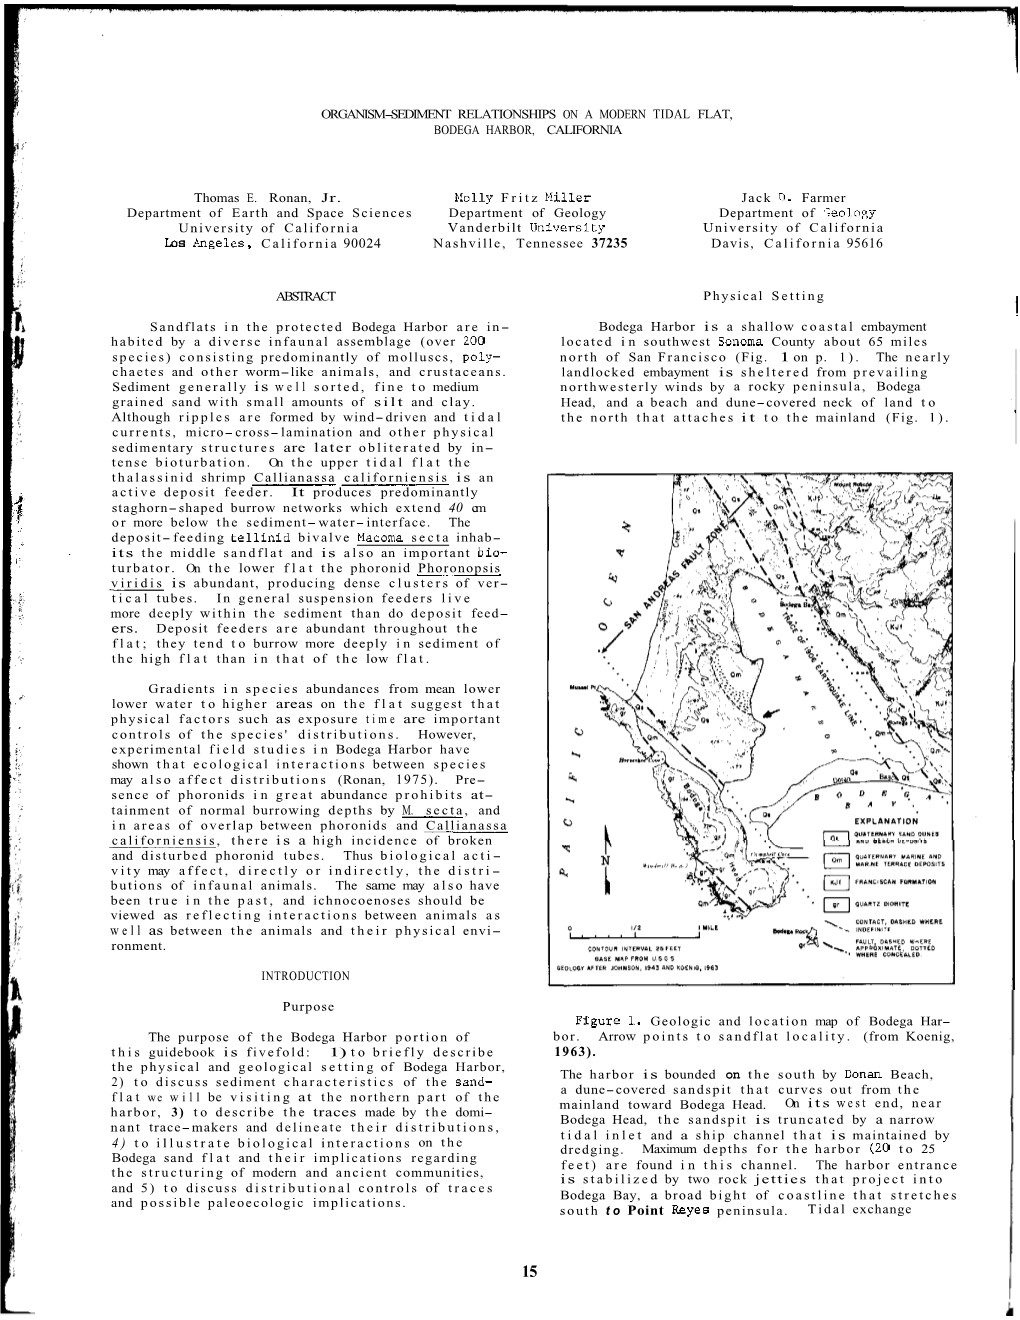 Ronan, T.E., M.L. Miller, and J.D. Farmer. 1981. Relationships on a Modern Tidal Flat, Bodega Harbor